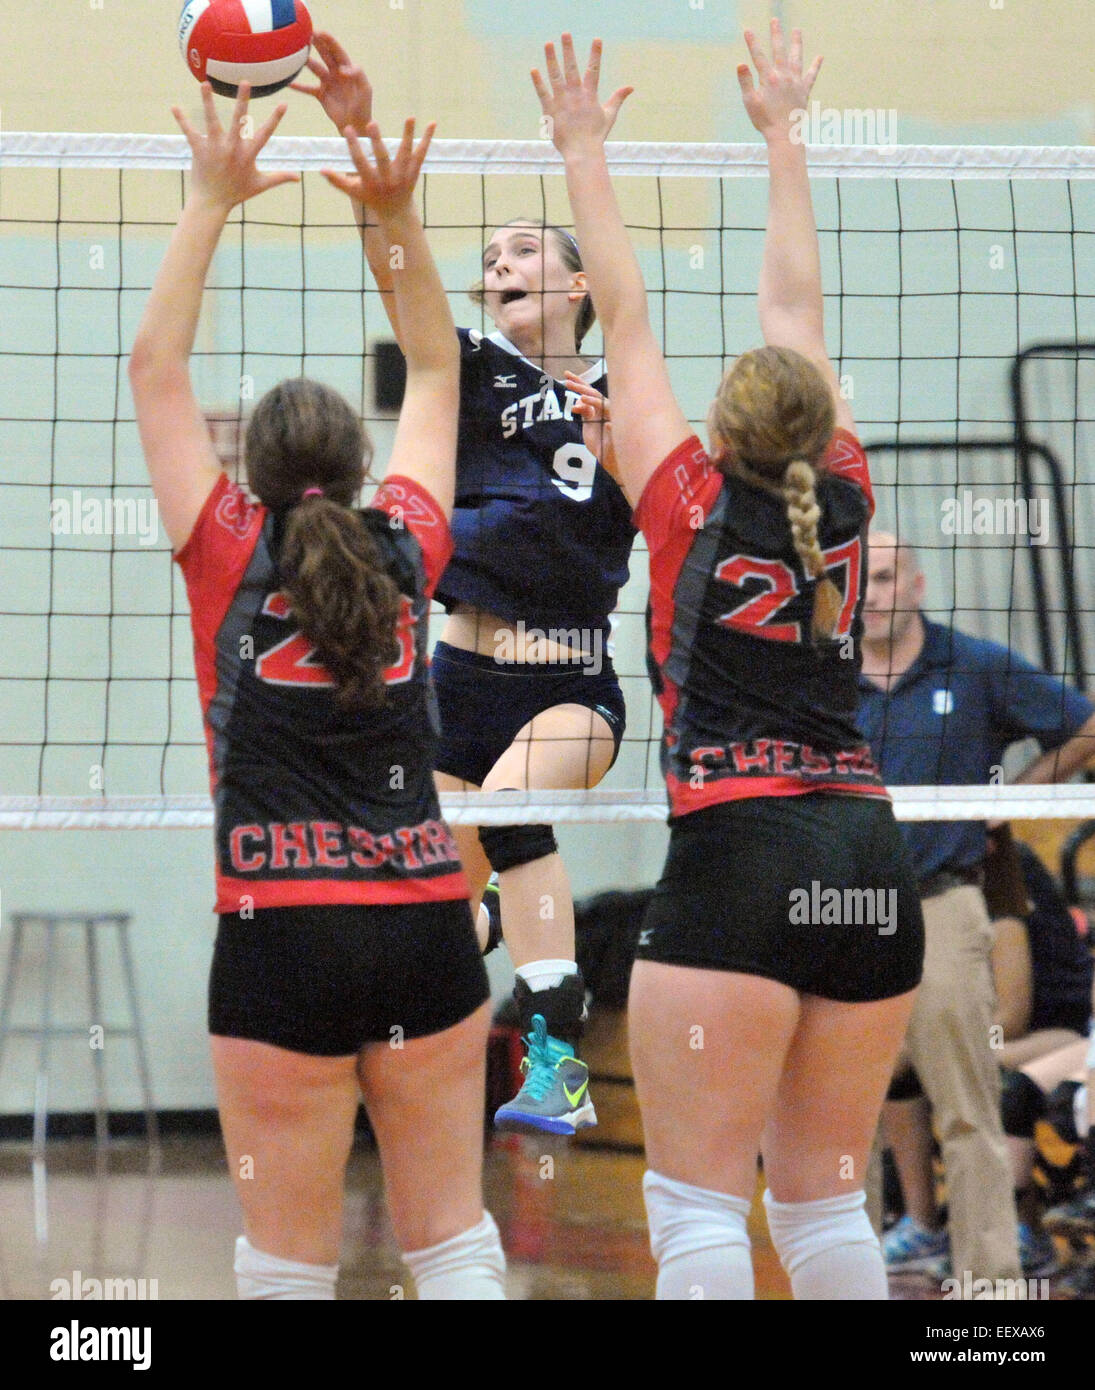 Cheshire, CT USA Staples Lauren Mushro stellt die Spitze in Cheshire während des Spiels CIAC Klasse LL Meisterschaft Volleyball Meisterschaft. Stockfoto